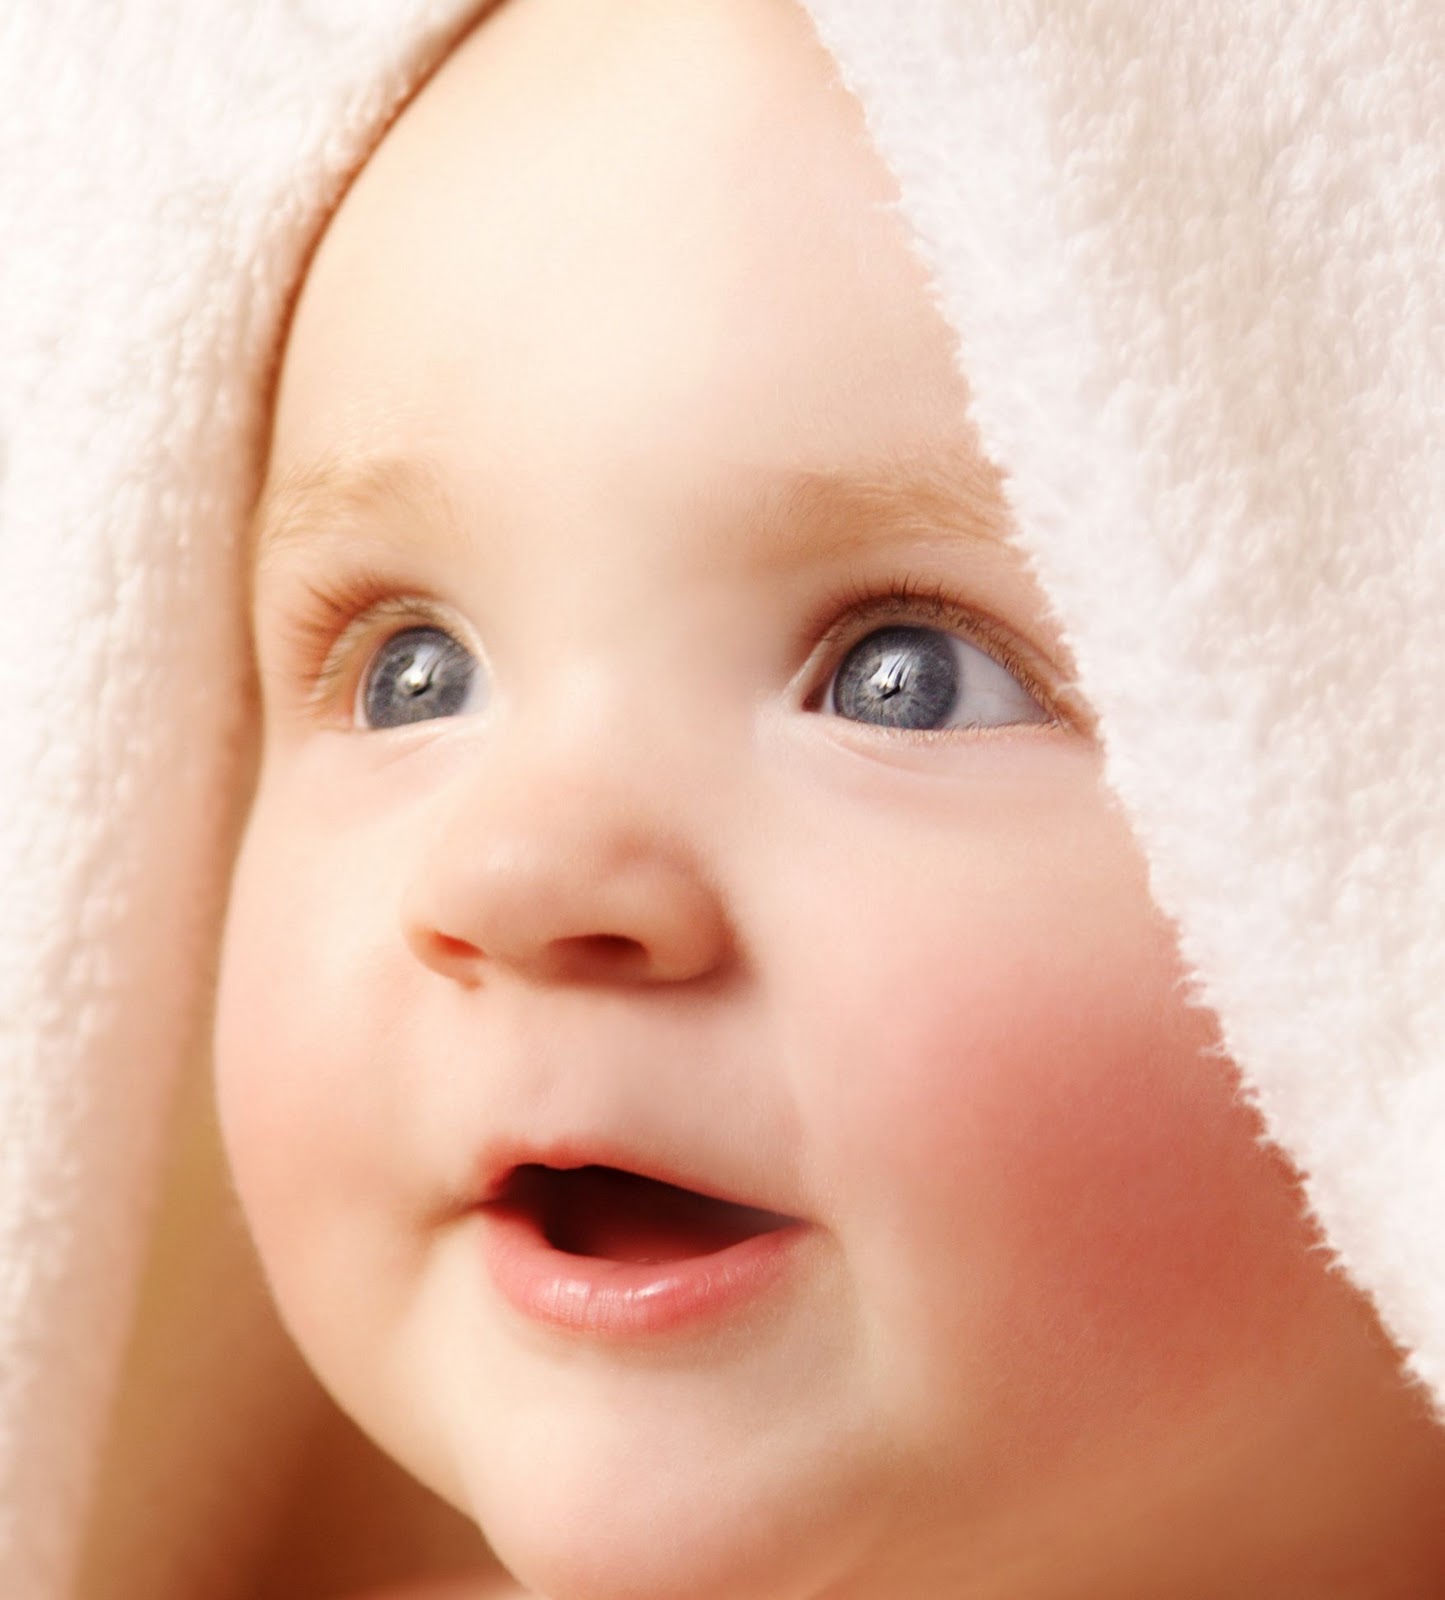 Koleksi Gambar Bayi  Gambar Bayi  Lucu